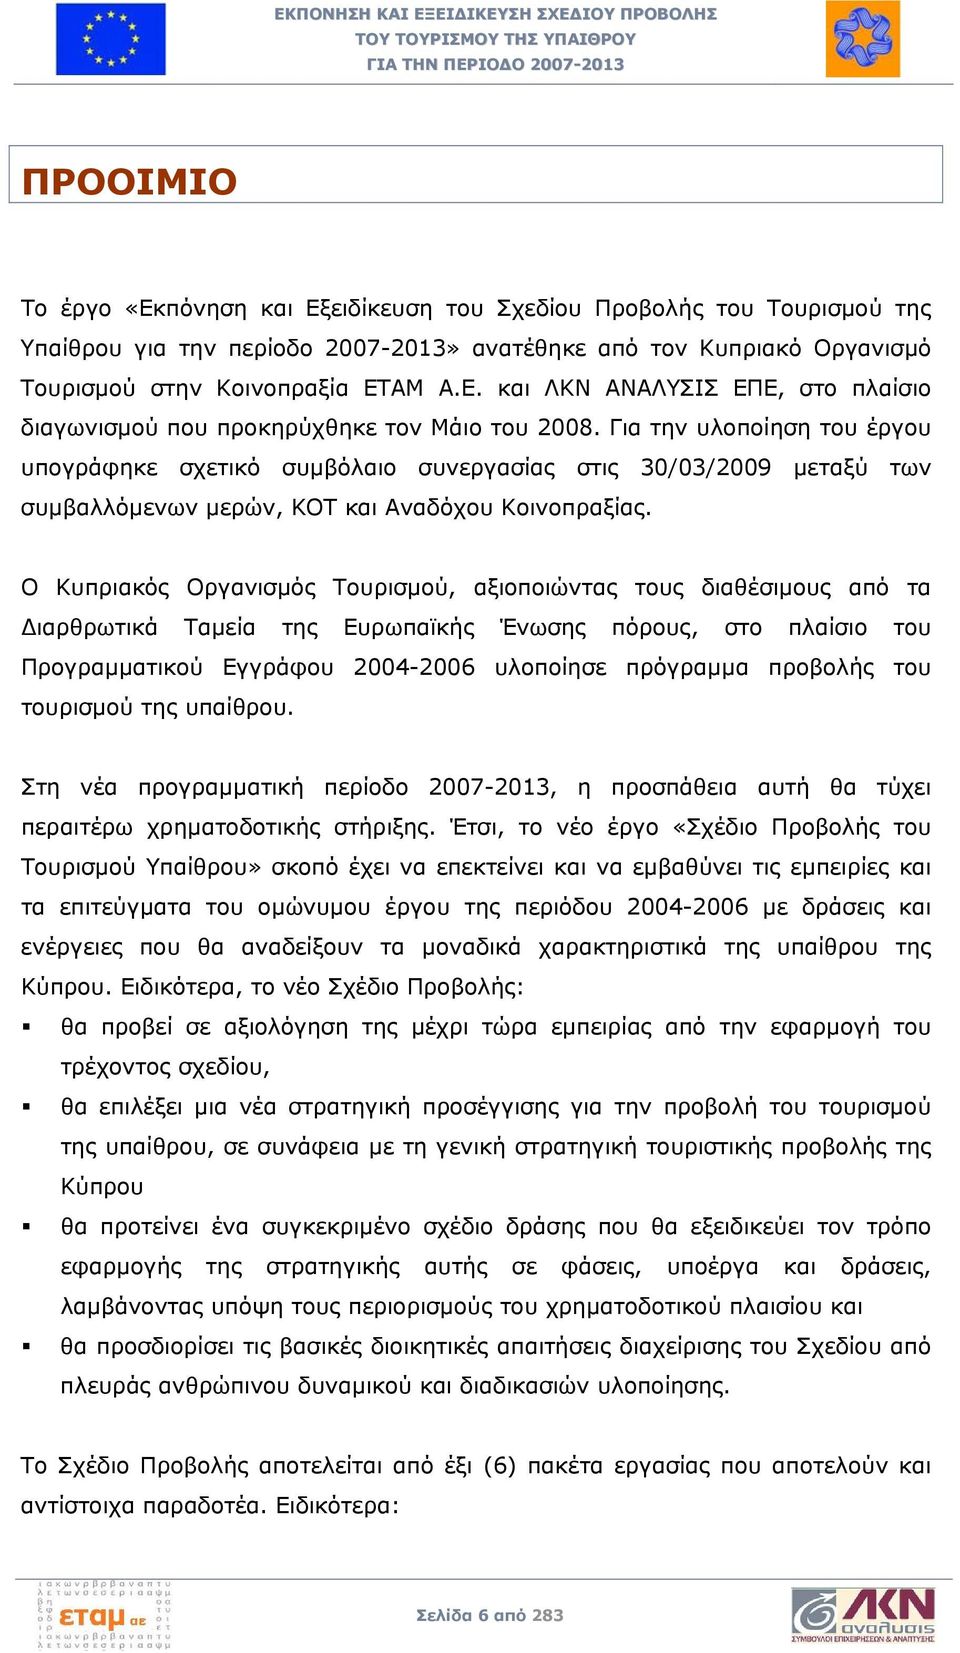 Ο Κυπριακός Οργανισμός Τουρισμού, αξιοποιώντας τους διαθέσιμους από τα Διαρθρωτικά Ταμεία της Ευρωπαϊκής Ένωσης πόρους, στο πλαίσιο του Προγραμματικού Εγγράφου 2004-2006 υλοποίησε πρόγραμμα προβολής